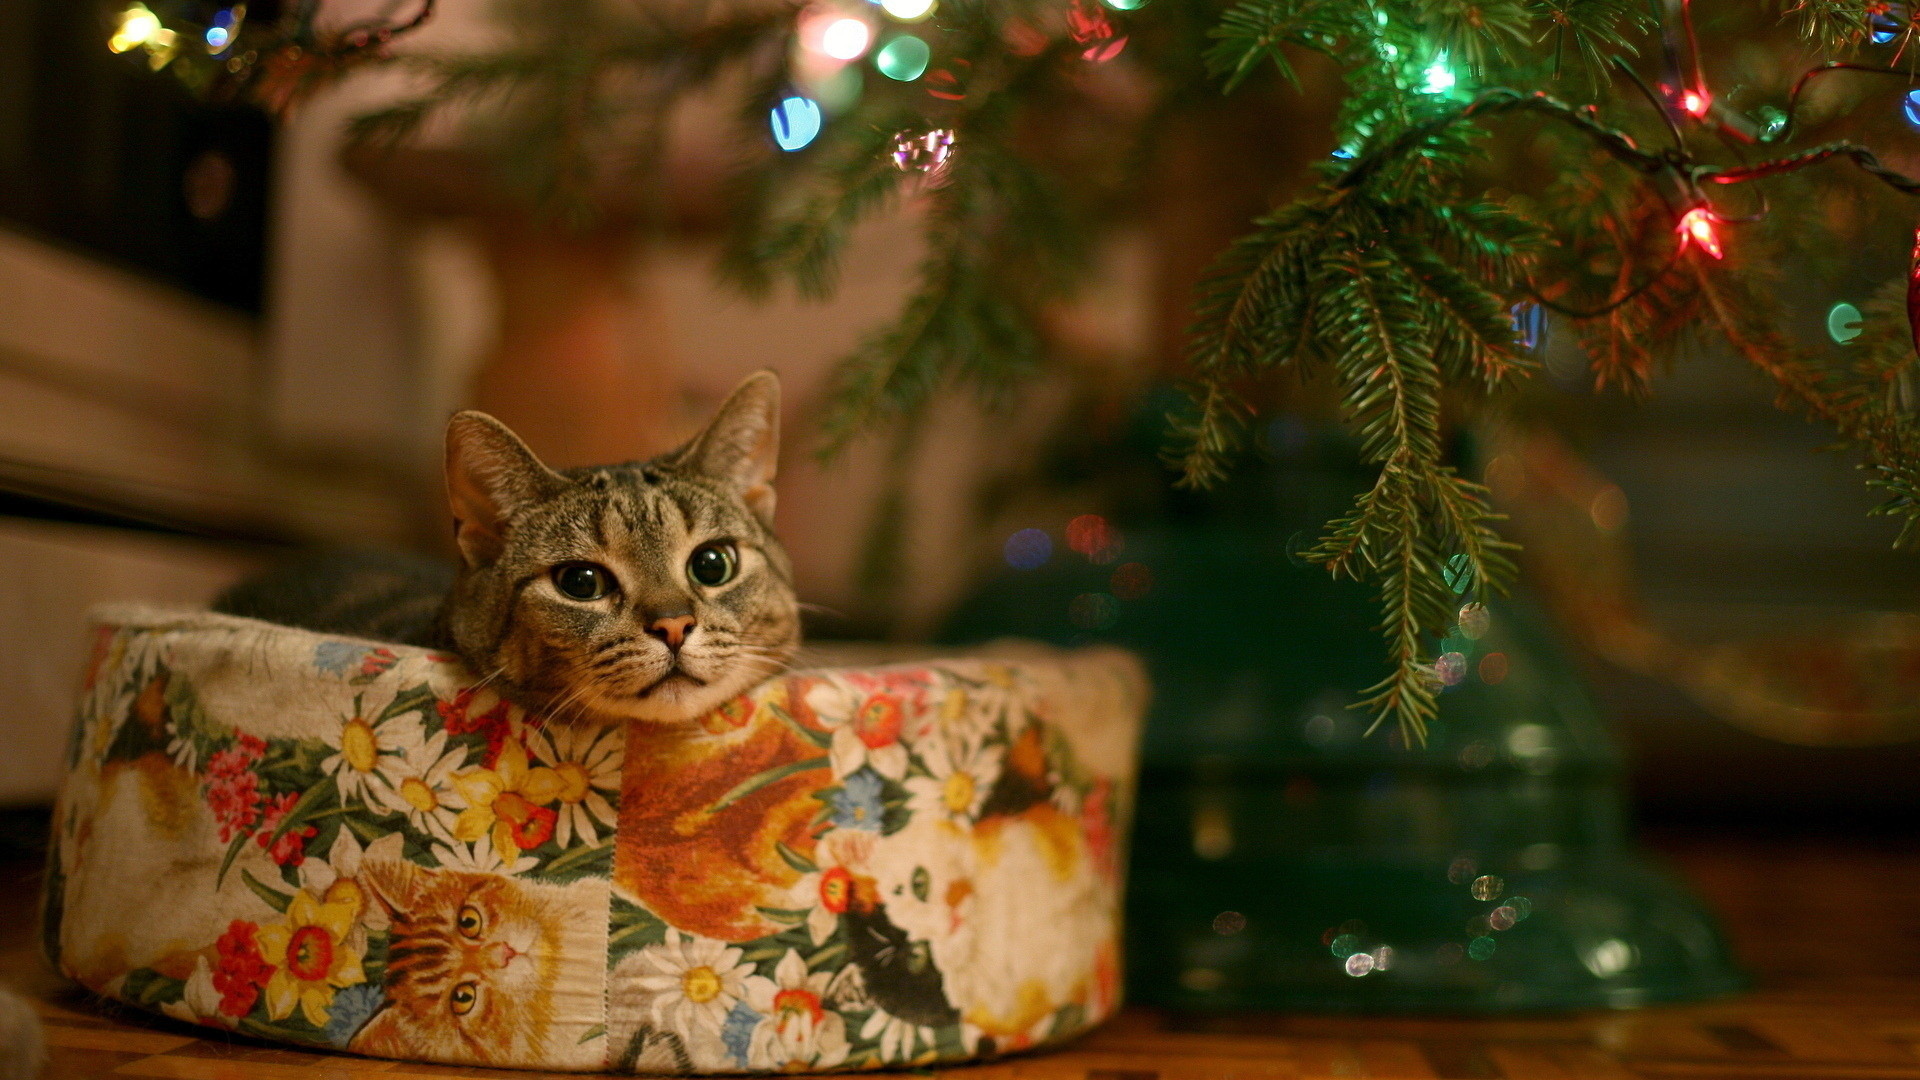 Cute christmas cat, Full HD, 1080p, wallpaper, 1920Ã1080